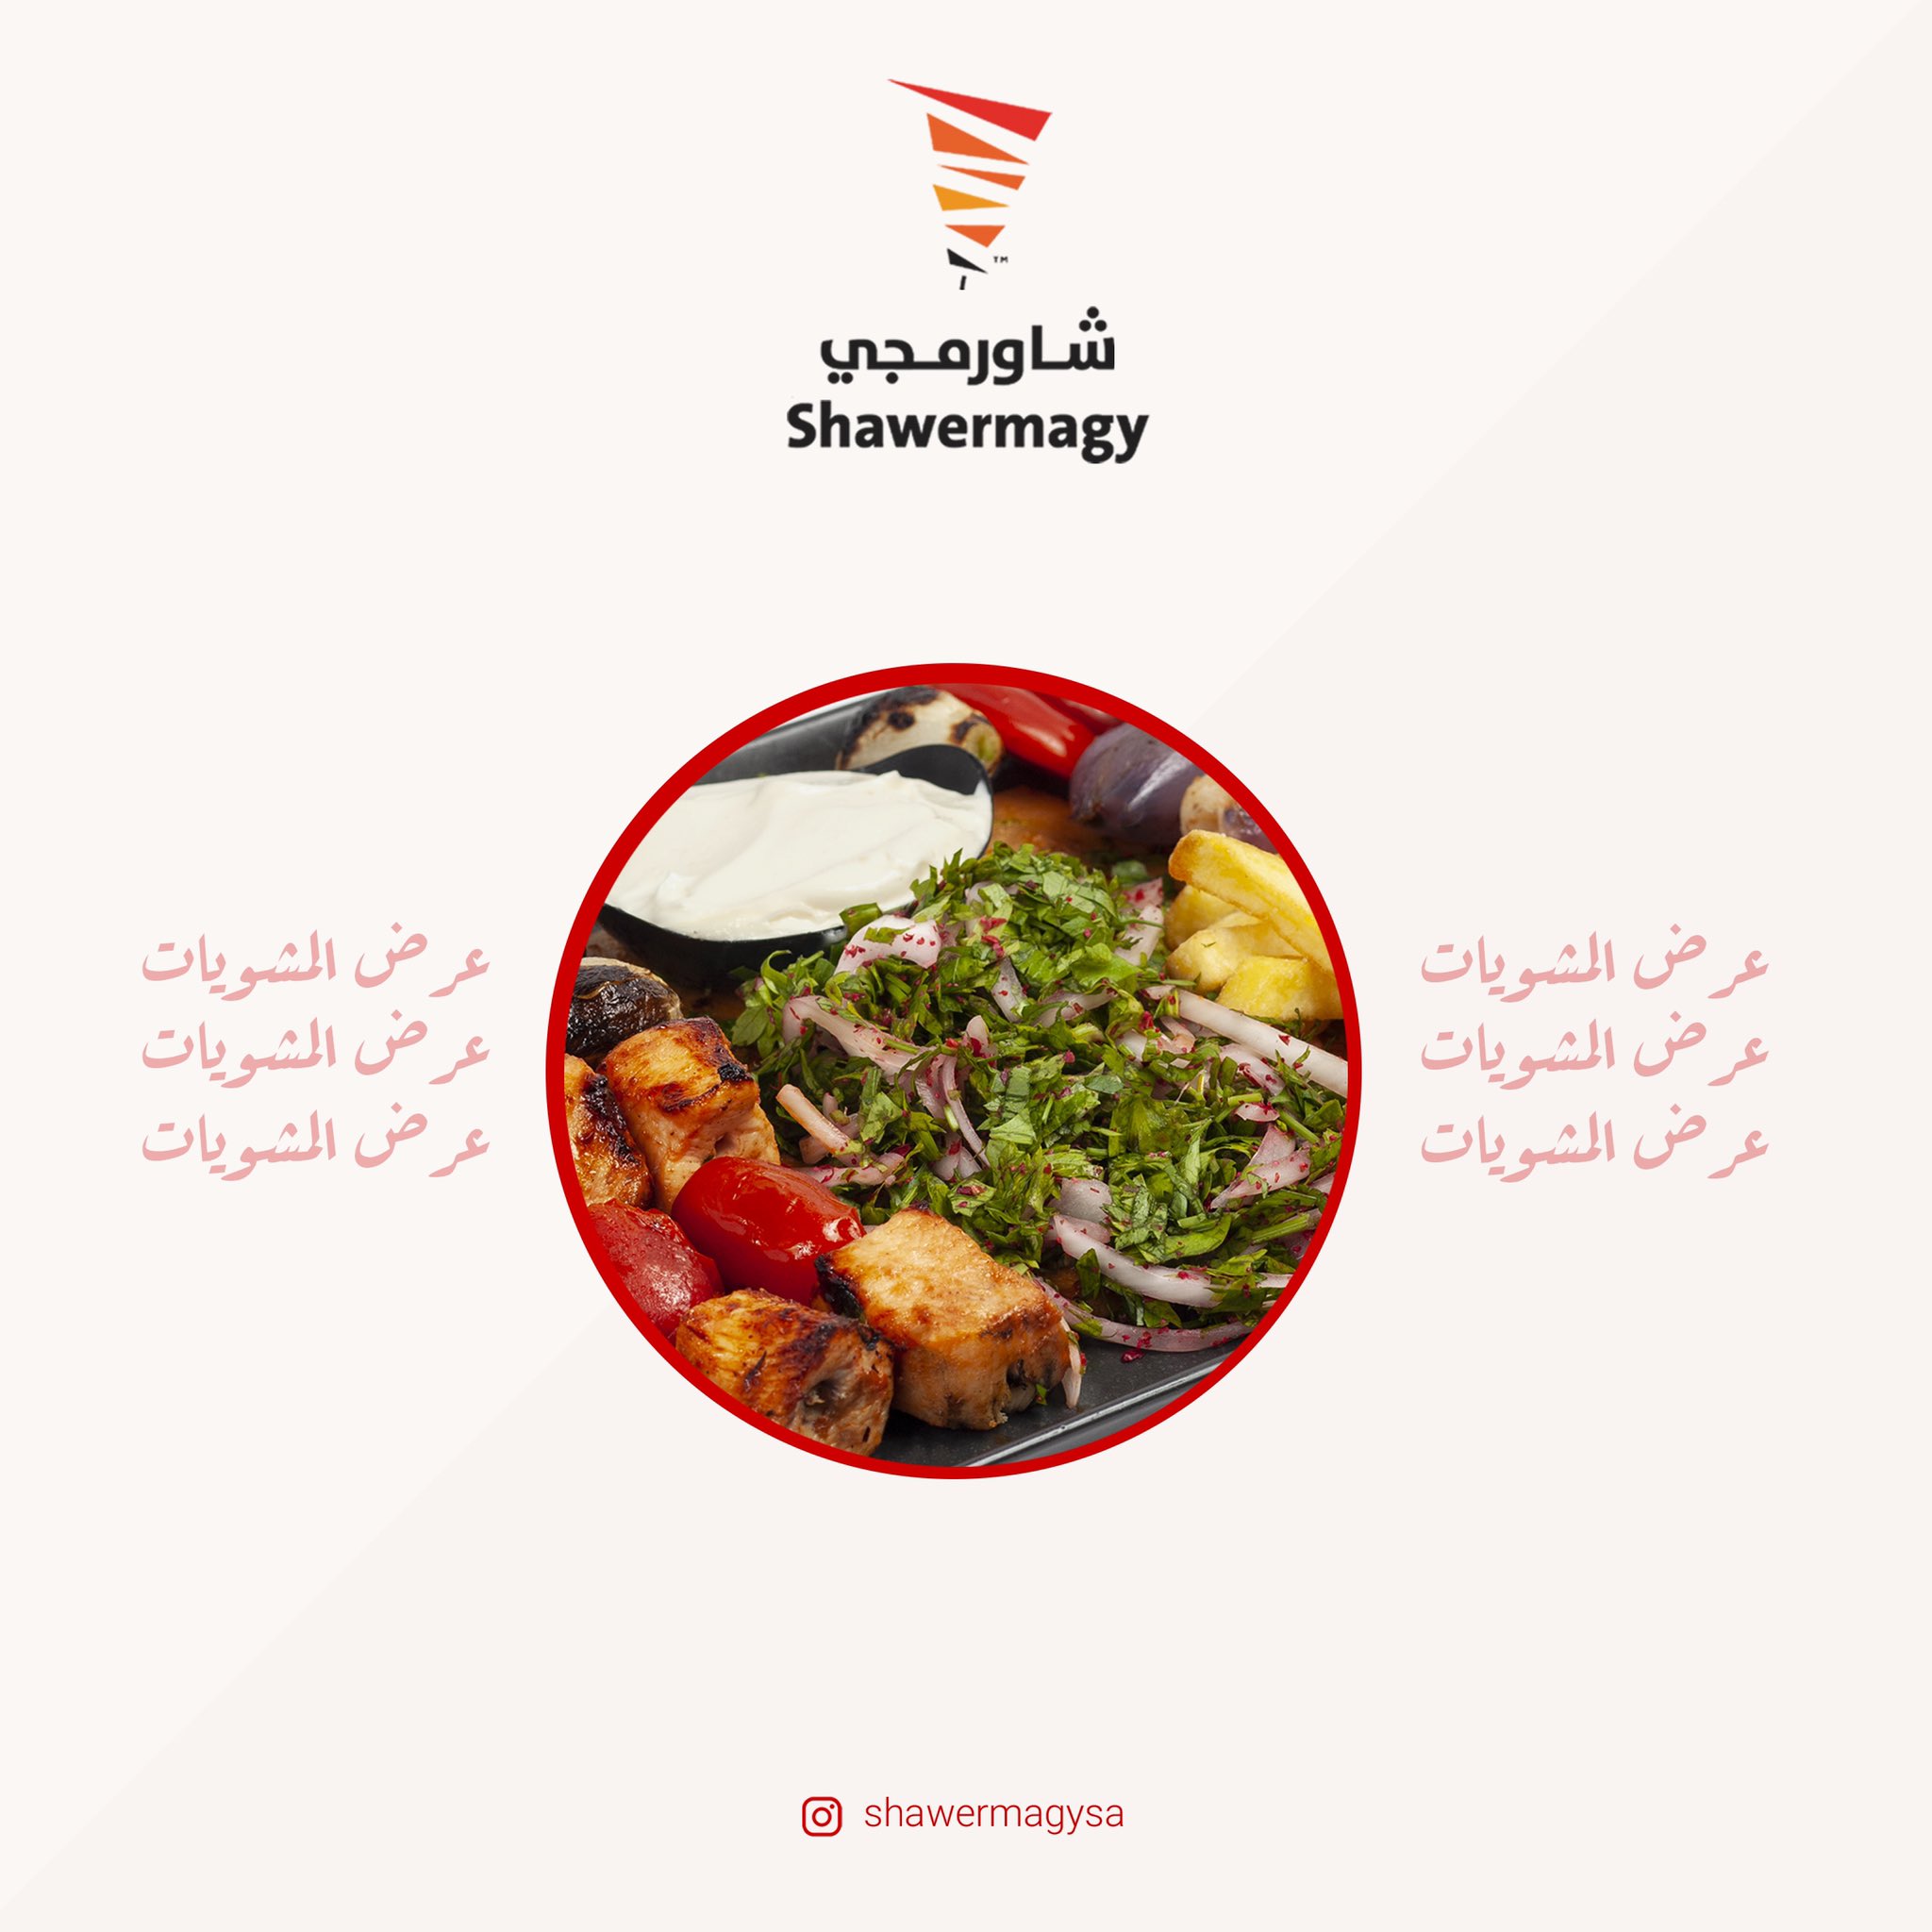 عروض مطعم شاورمجي الظهران